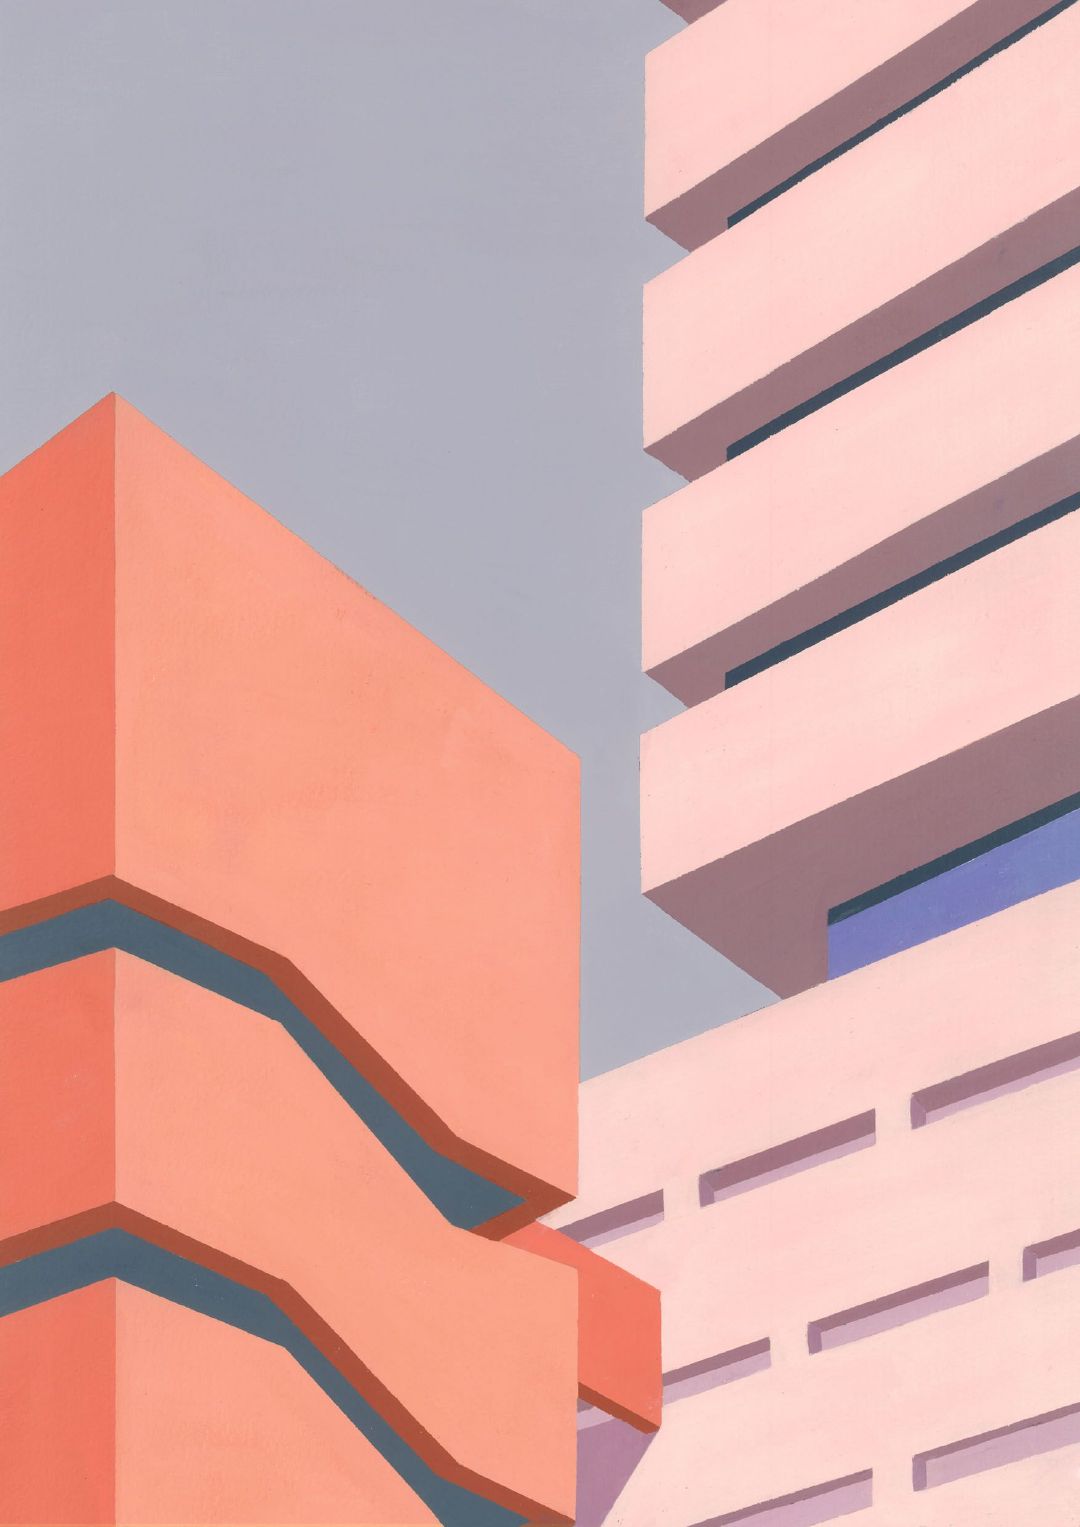 几何图案手绘出的建筑美学 by bianca wilson #灵感的诞生